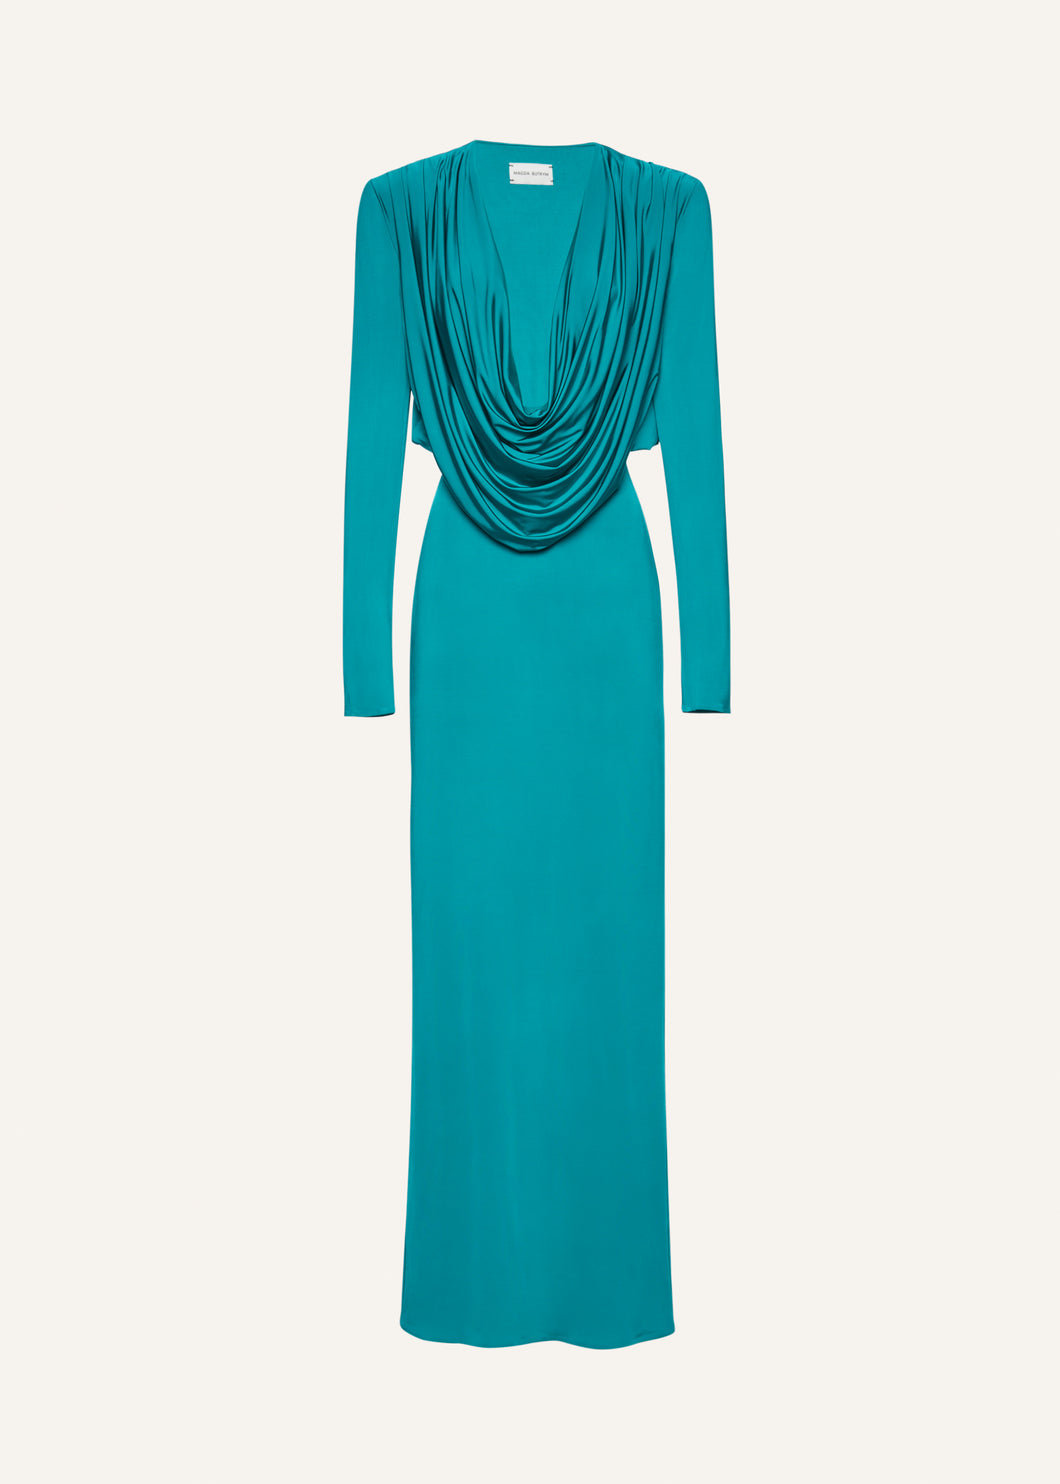 Long sleeve draped maxi dress in jade